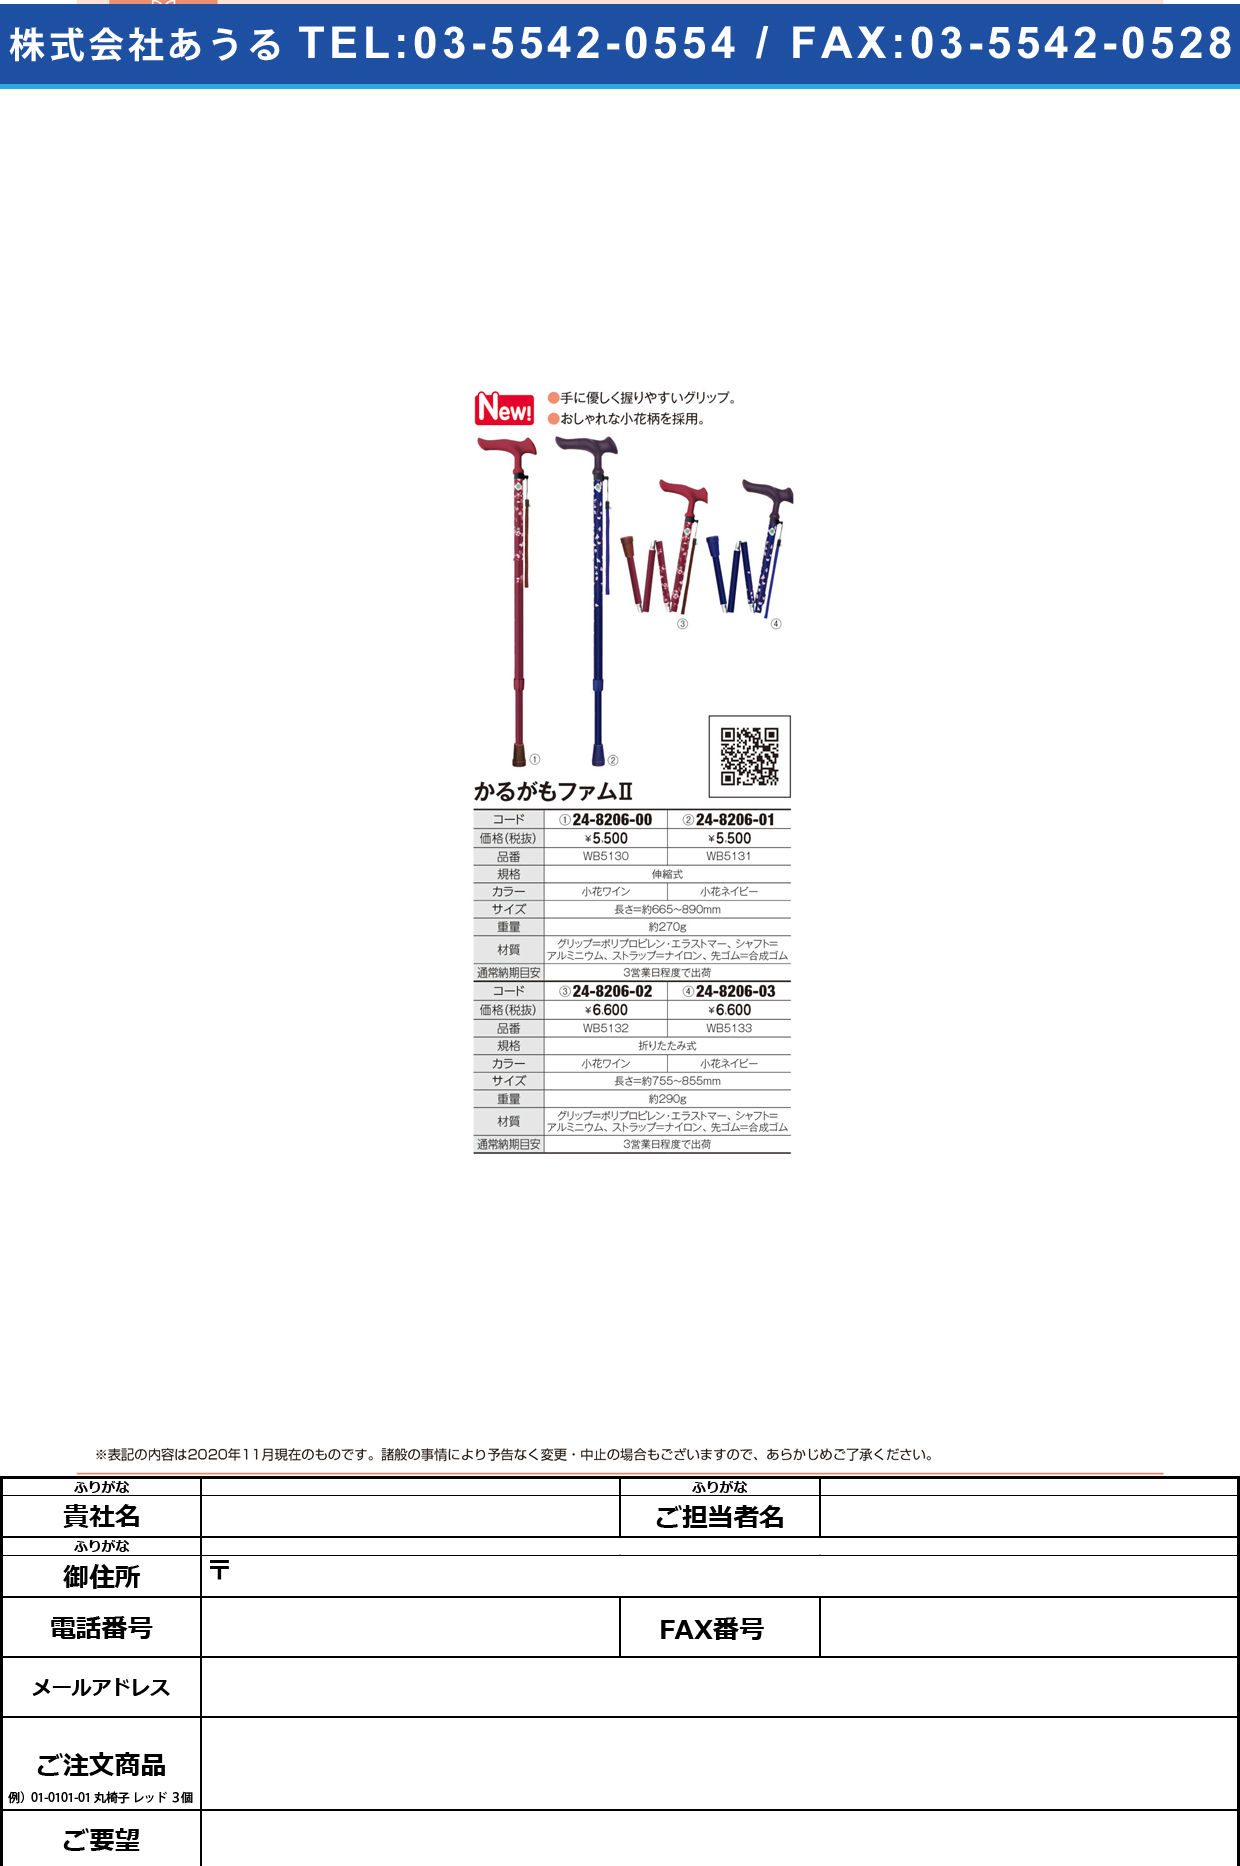 ステッキ かるがもファムⅡ(折畳) WB5132(コバナワイン)WB5132(ｺﾊﾞﾅﾜｲﾝ)(24-8206-02)【フジホーム】(販売単位:1)